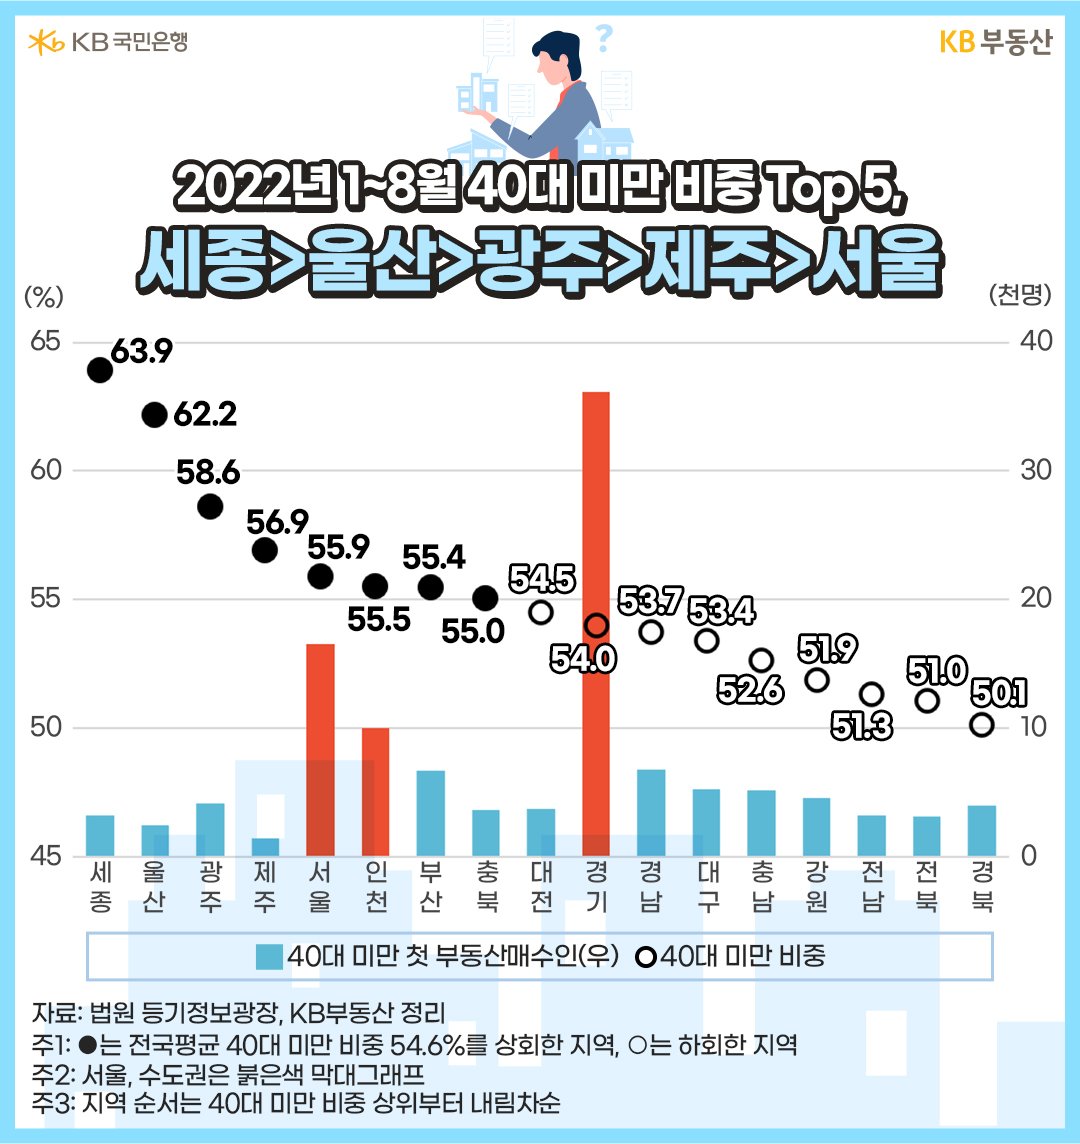 2022년 1~8월의 '40대 미만 첫 부동산매수인' 비중과 수를 지역별로 나타낸 그래프. 경기도권 등 수도권과 서울, 인천에서 40대 미만 매수인의 수가 매우 높게 관측됨.